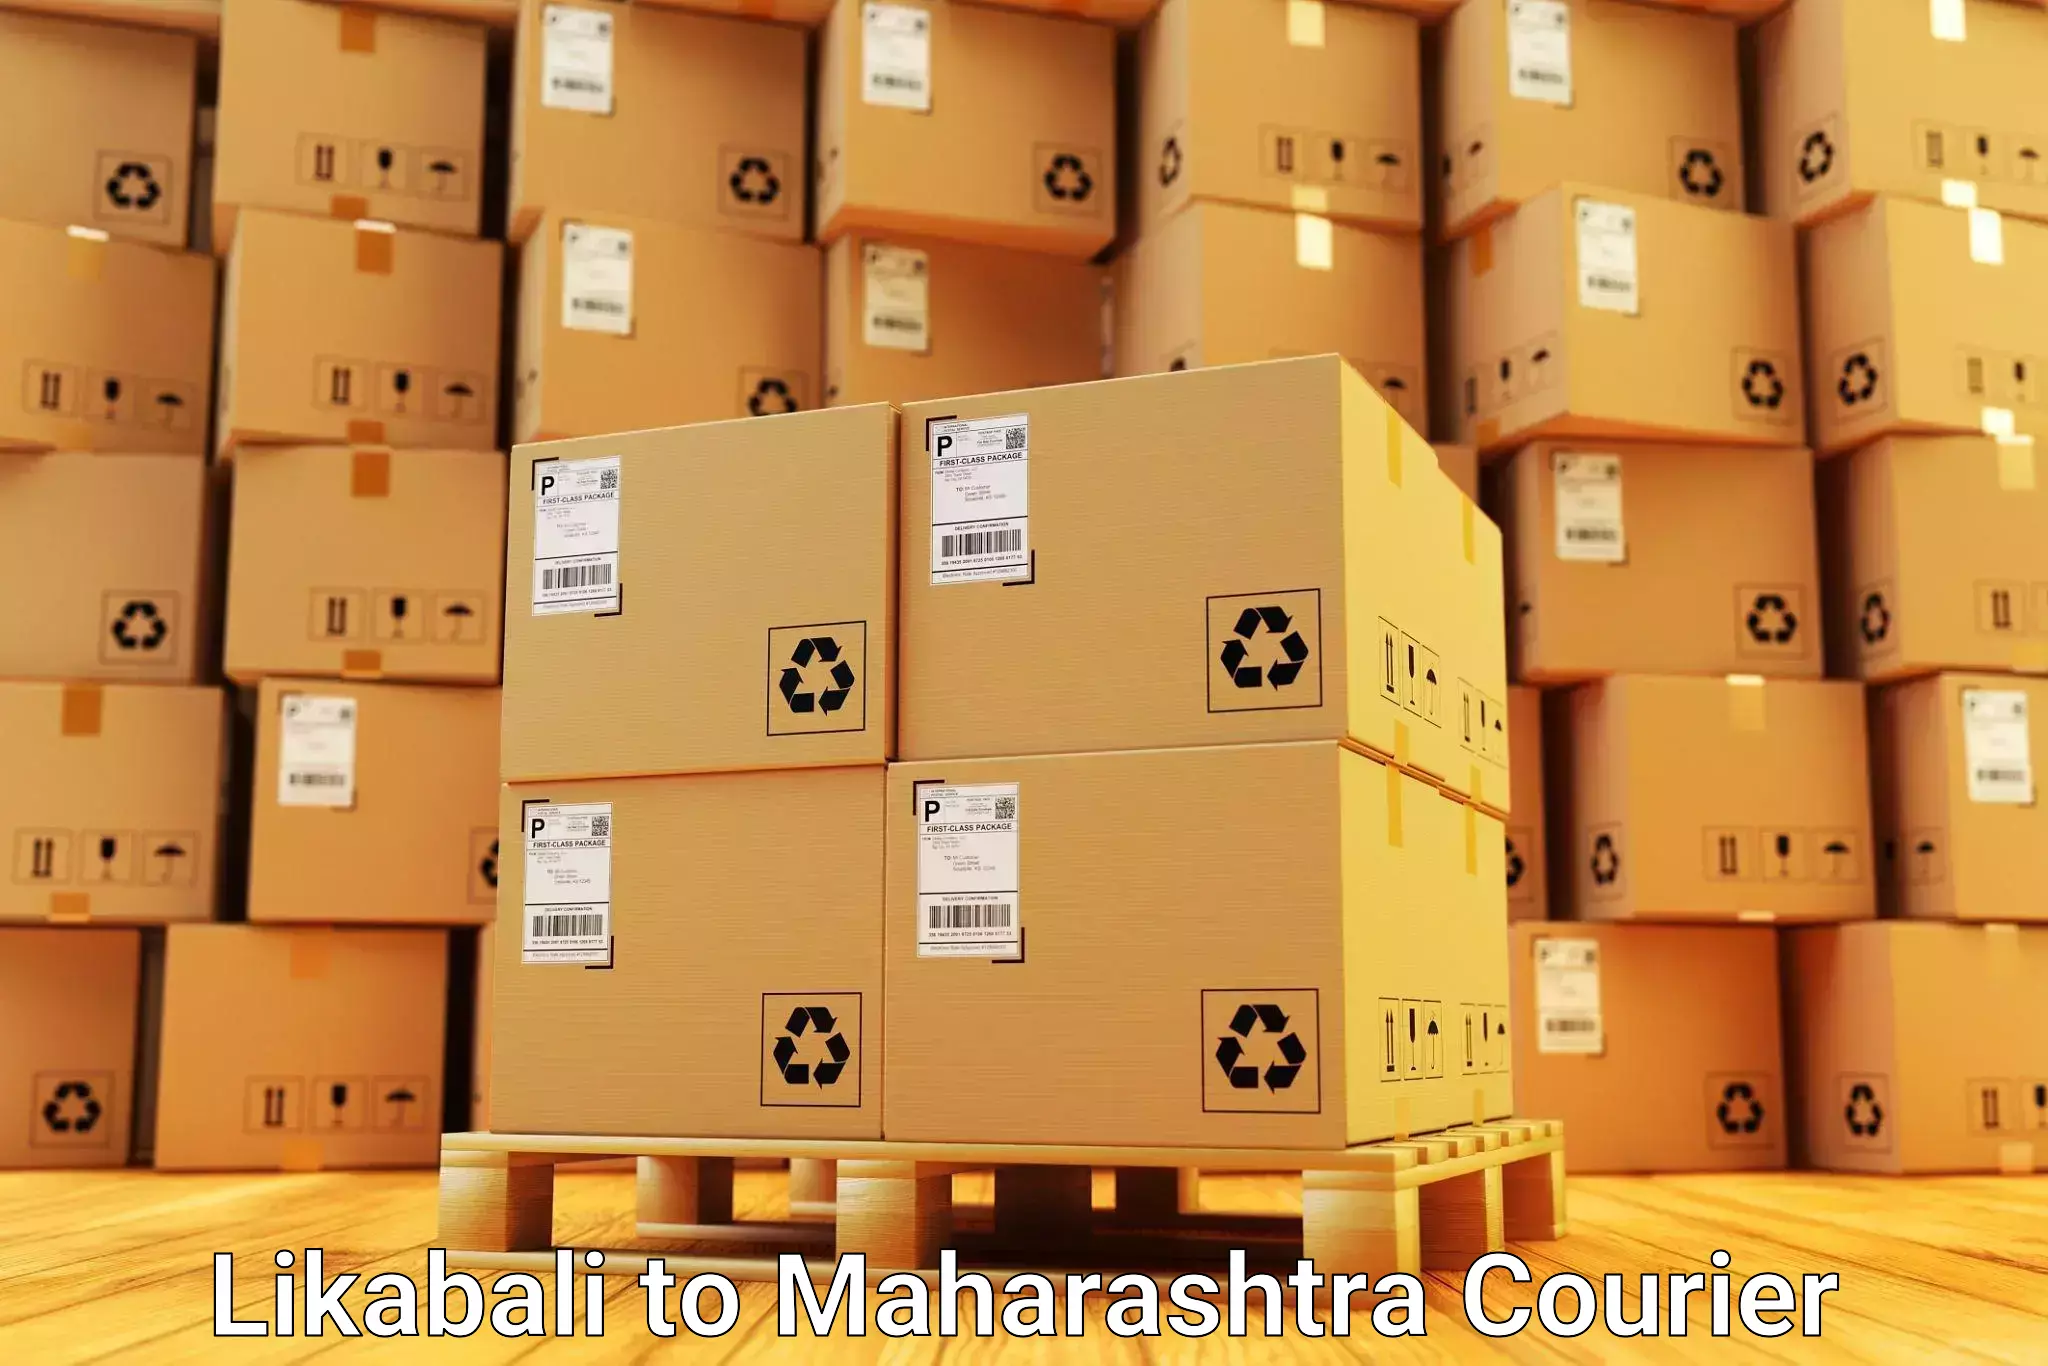 Personalized moving service Likabali to Maharashtra